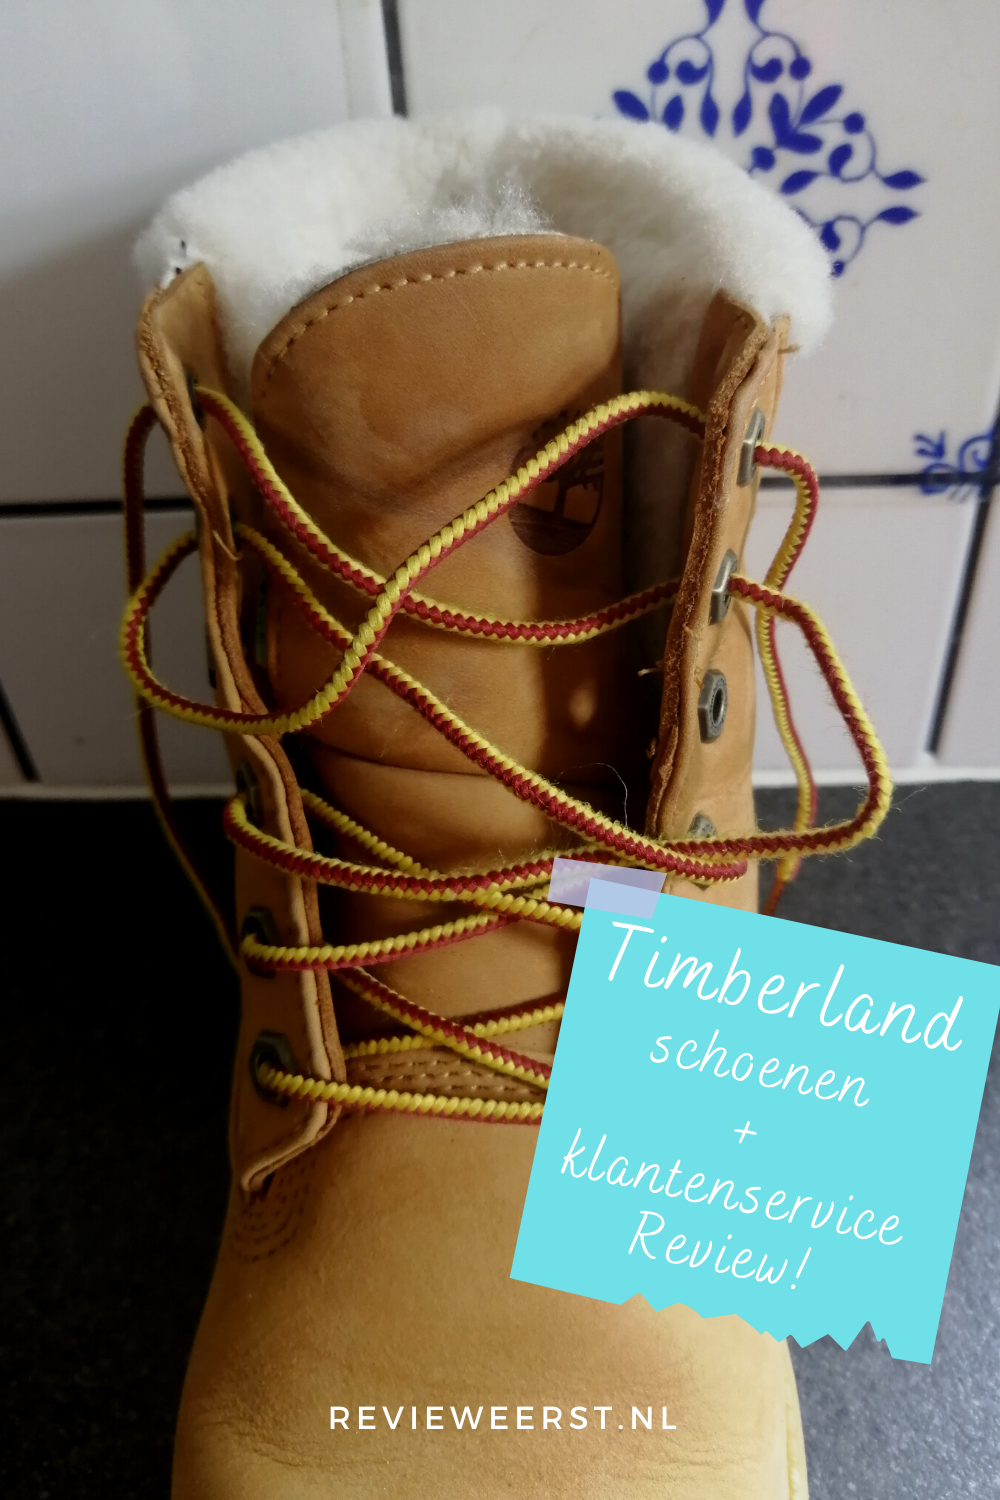 pond Republiek Uiterlijk Timberland schoenen + klantenservice review | Review Eerst